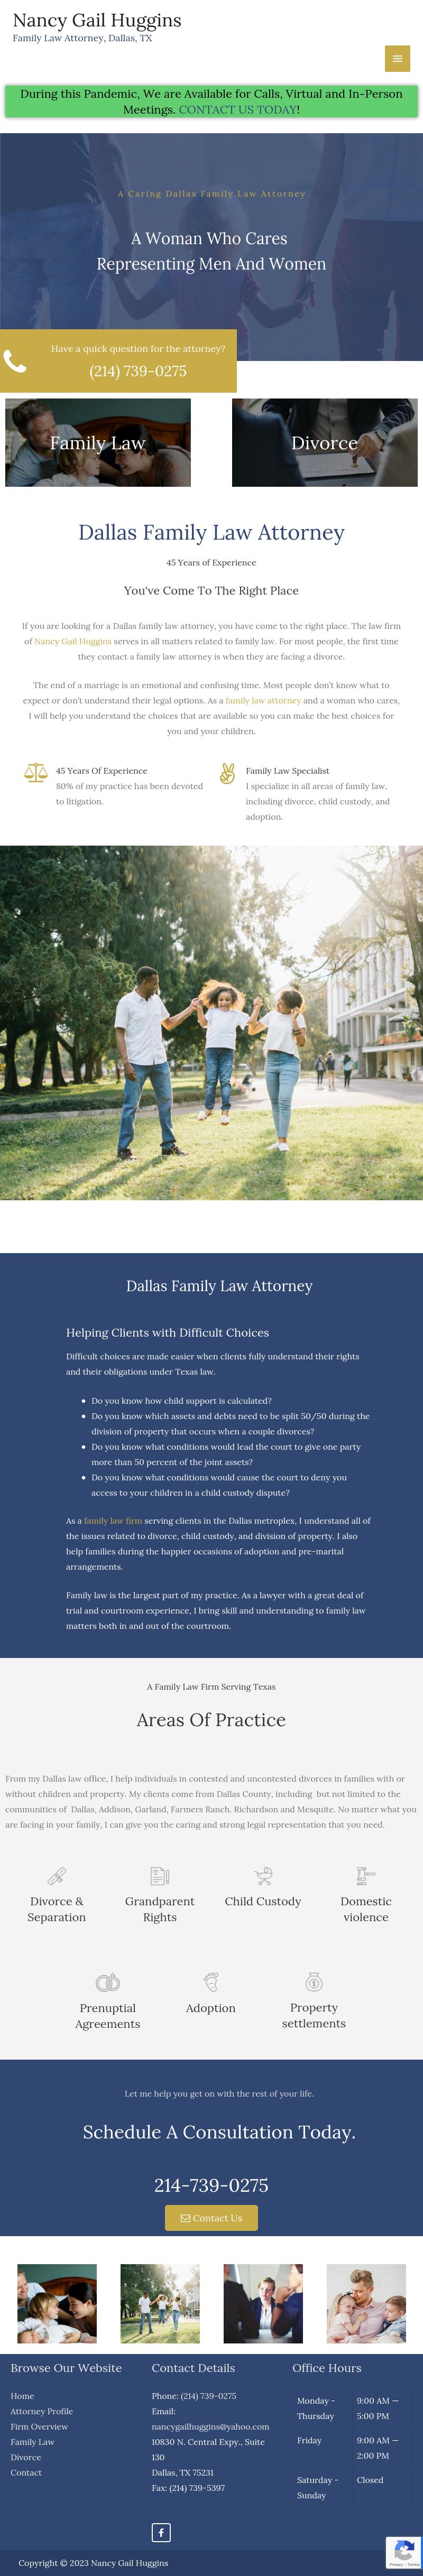 Nancy Gail Huggins Attorney At Law - Dallas TX Lawyers